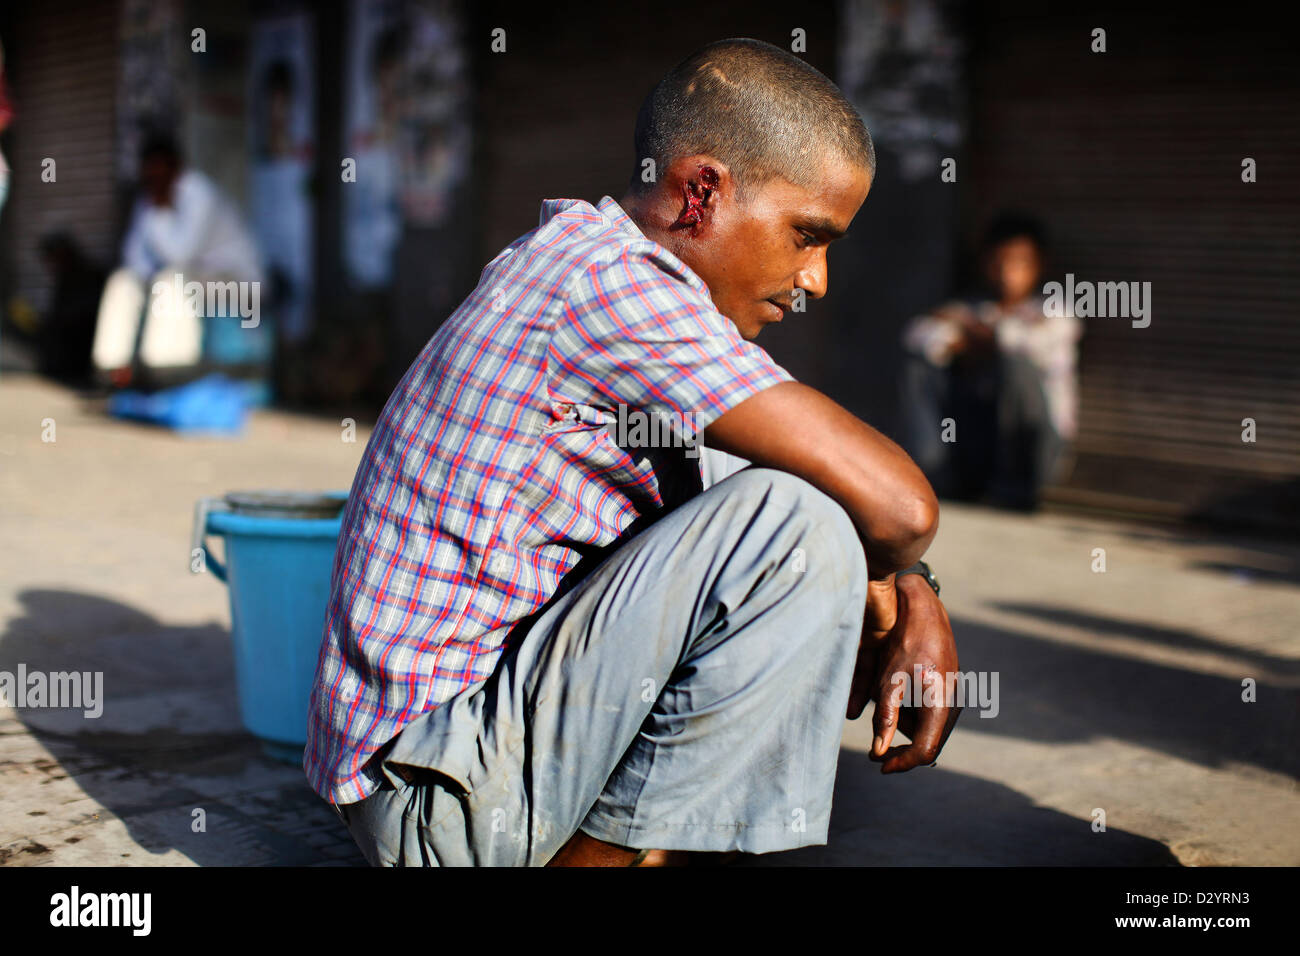 Sep 24, 2012 - Delhi, Indien - A-Rikscha-Fahrer wartet ärztliche Hilfe nachdem er sein Ohr abgeschnitten in einer gewalttätigen Auseinandersetzung. (Kredit-Bild: © Michael Francis McElroy/ZUMAPRESS.com) Stockfoto